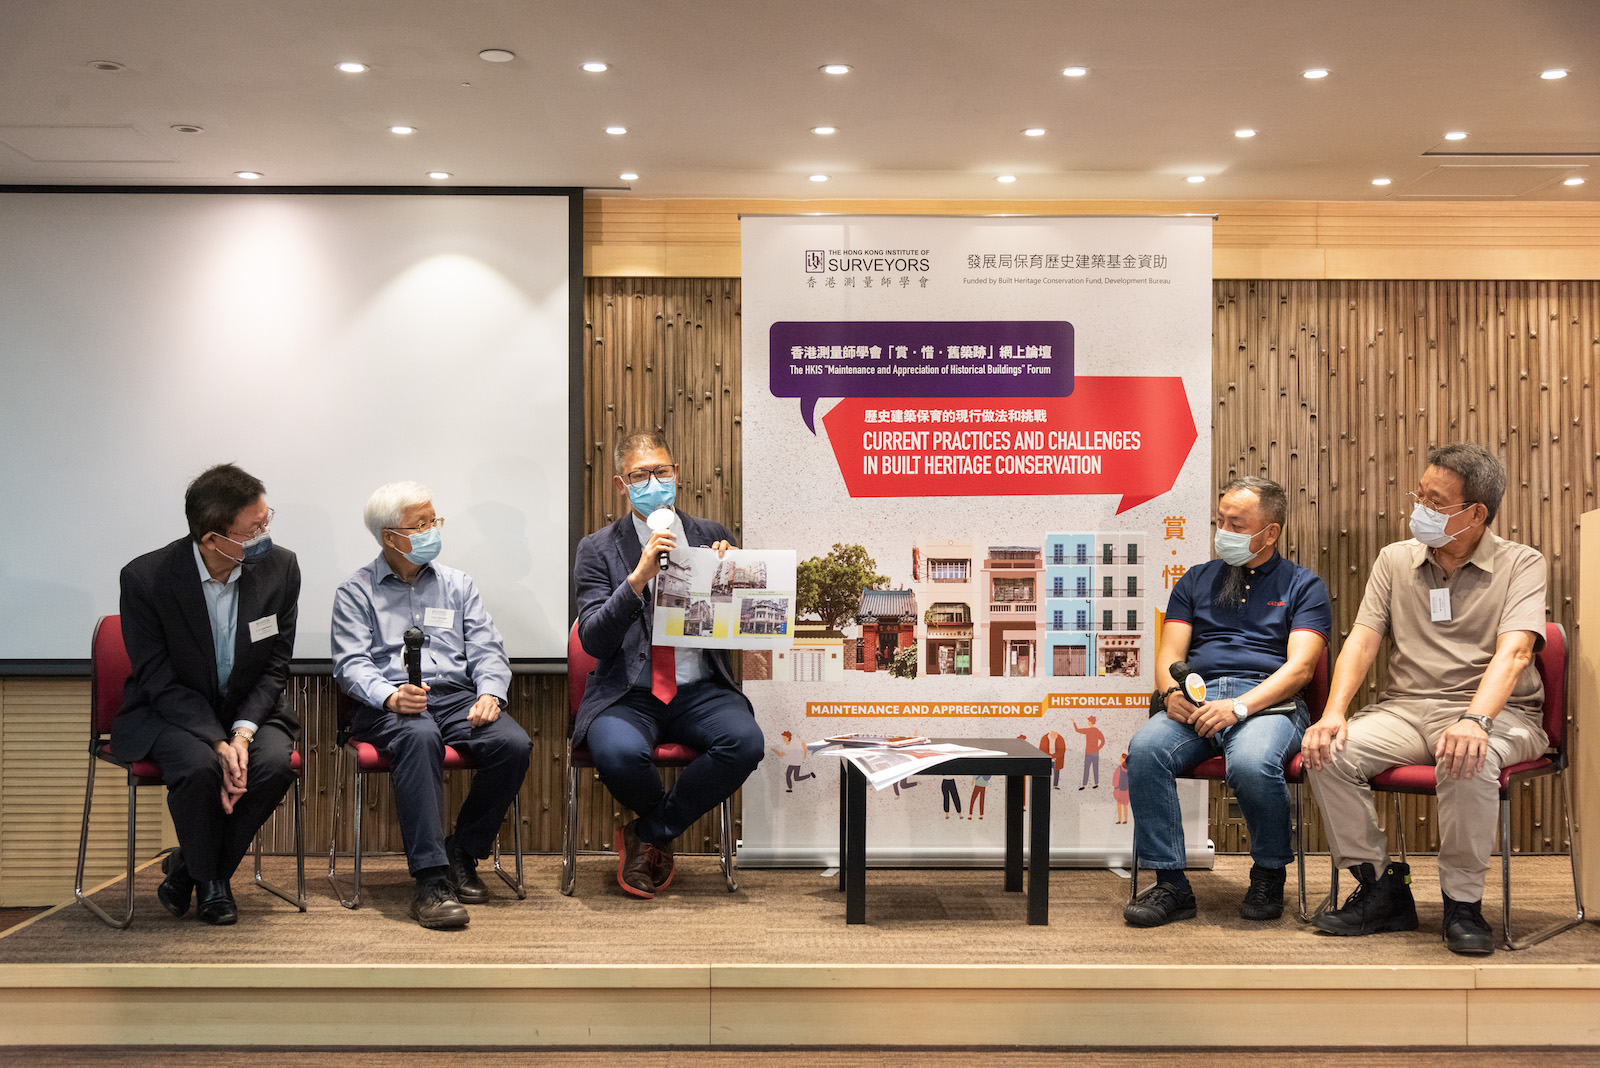 香港測量師學會「賞．惜．舊築跡」網上論壇: 歷史建築保育的現行做法和挑戰